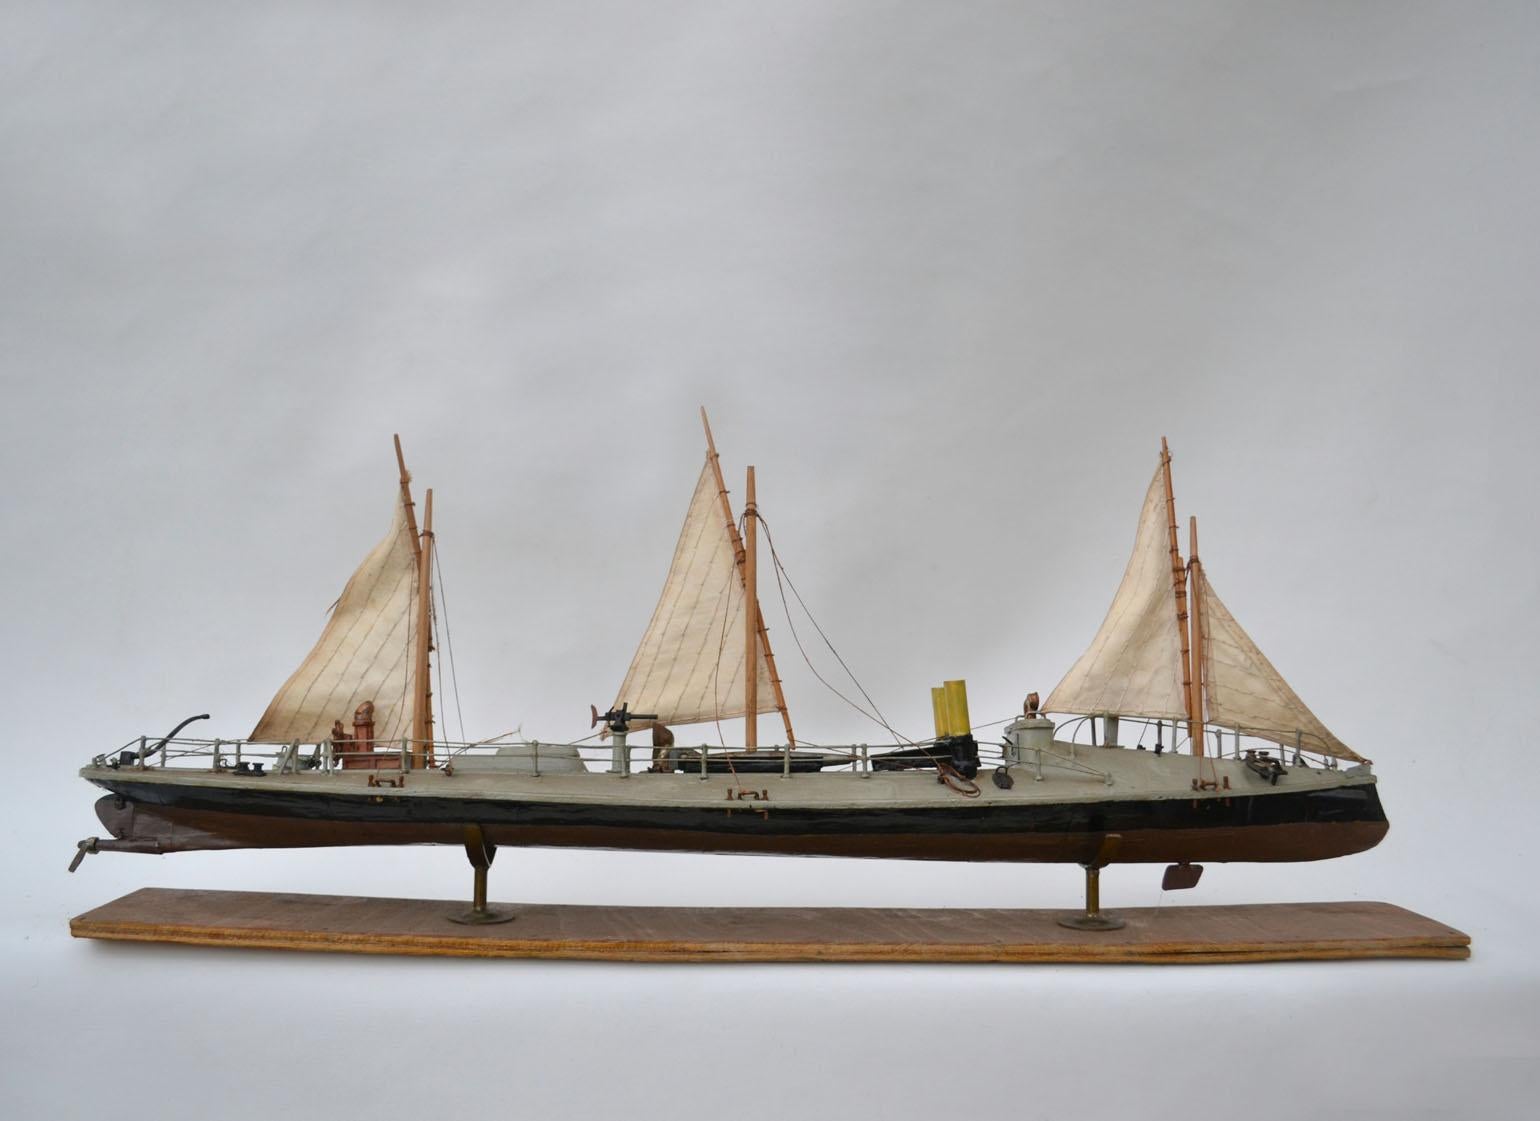 Maquette artisanale et détaillée du début du 20e siècle du torpilleur à trois maîtres Klasse Batum, 1880.
Il est doté d'un pont tortue à l'avant, de deux cheminées côte à côte, d'un gouvernail arrière visible au-dessus de l'eau et d'un gouvernail de